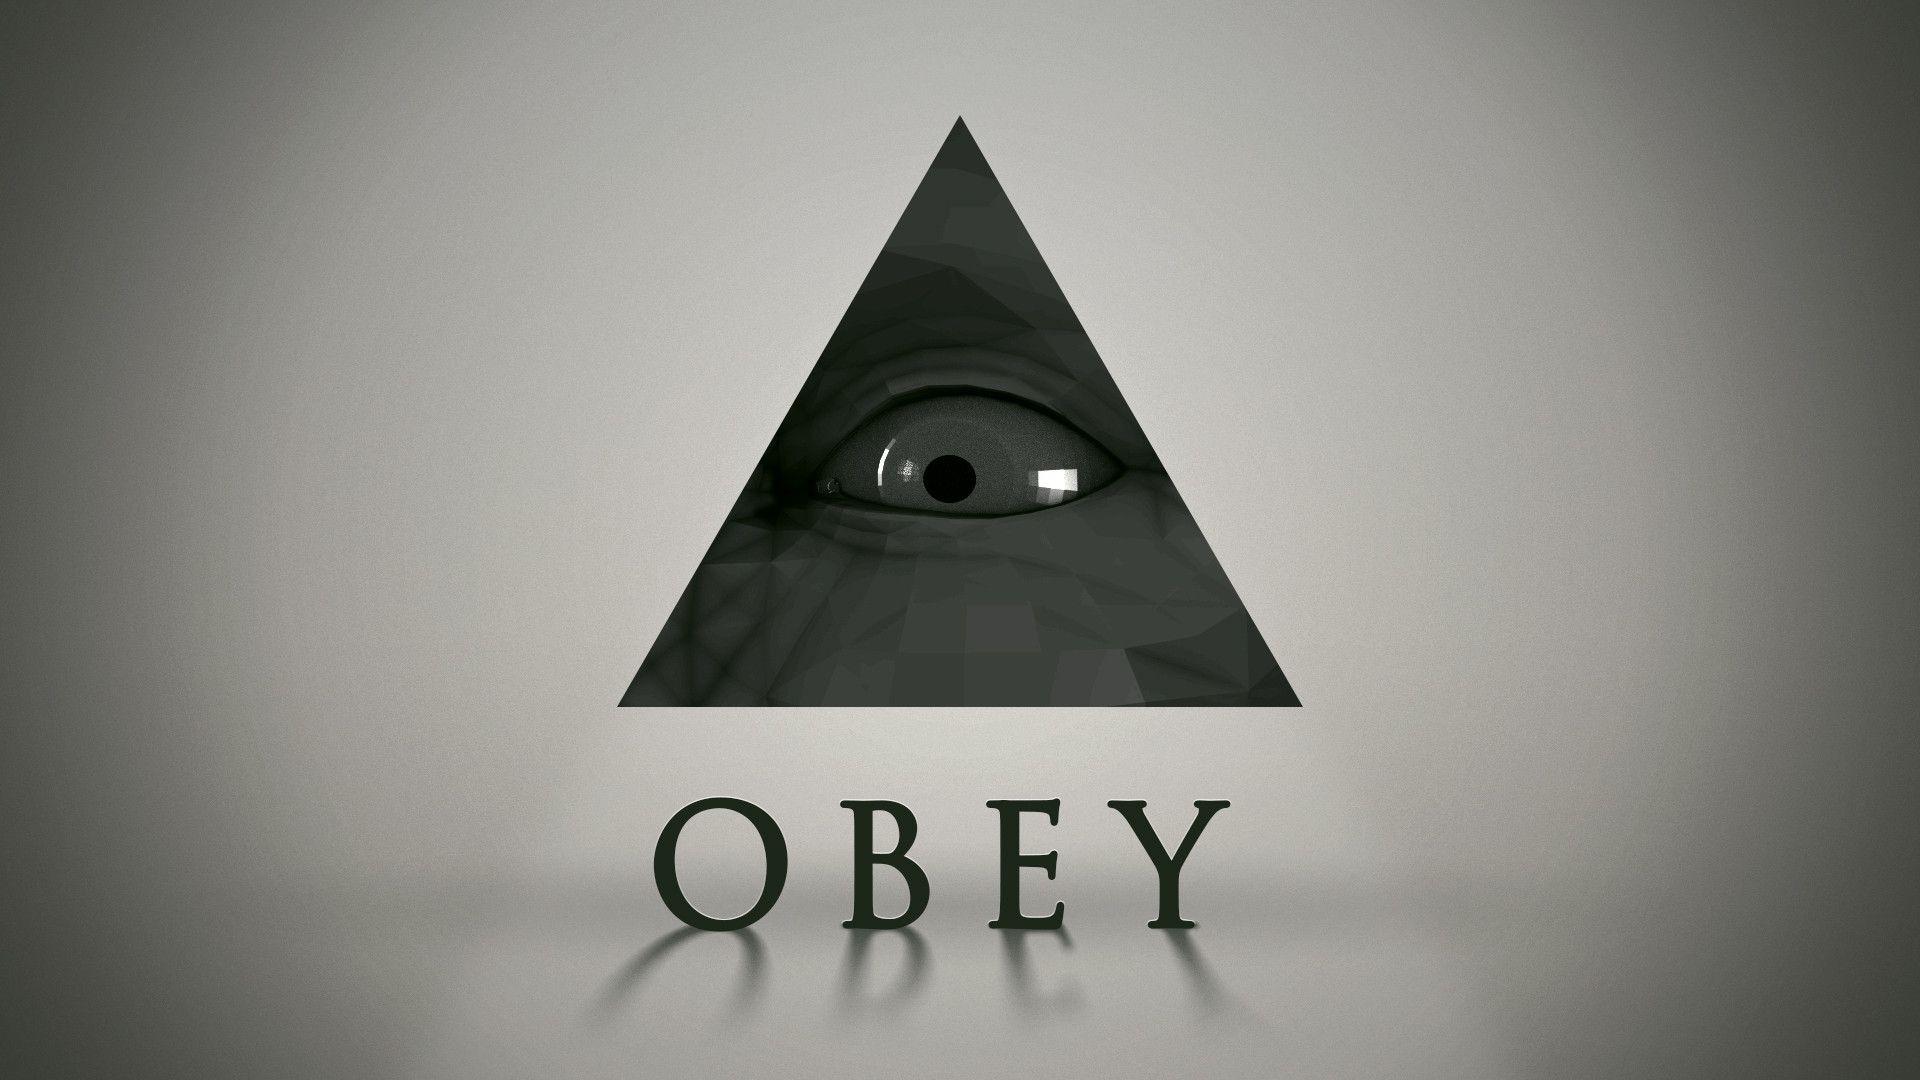 Obey. [1920x1080] (OC)